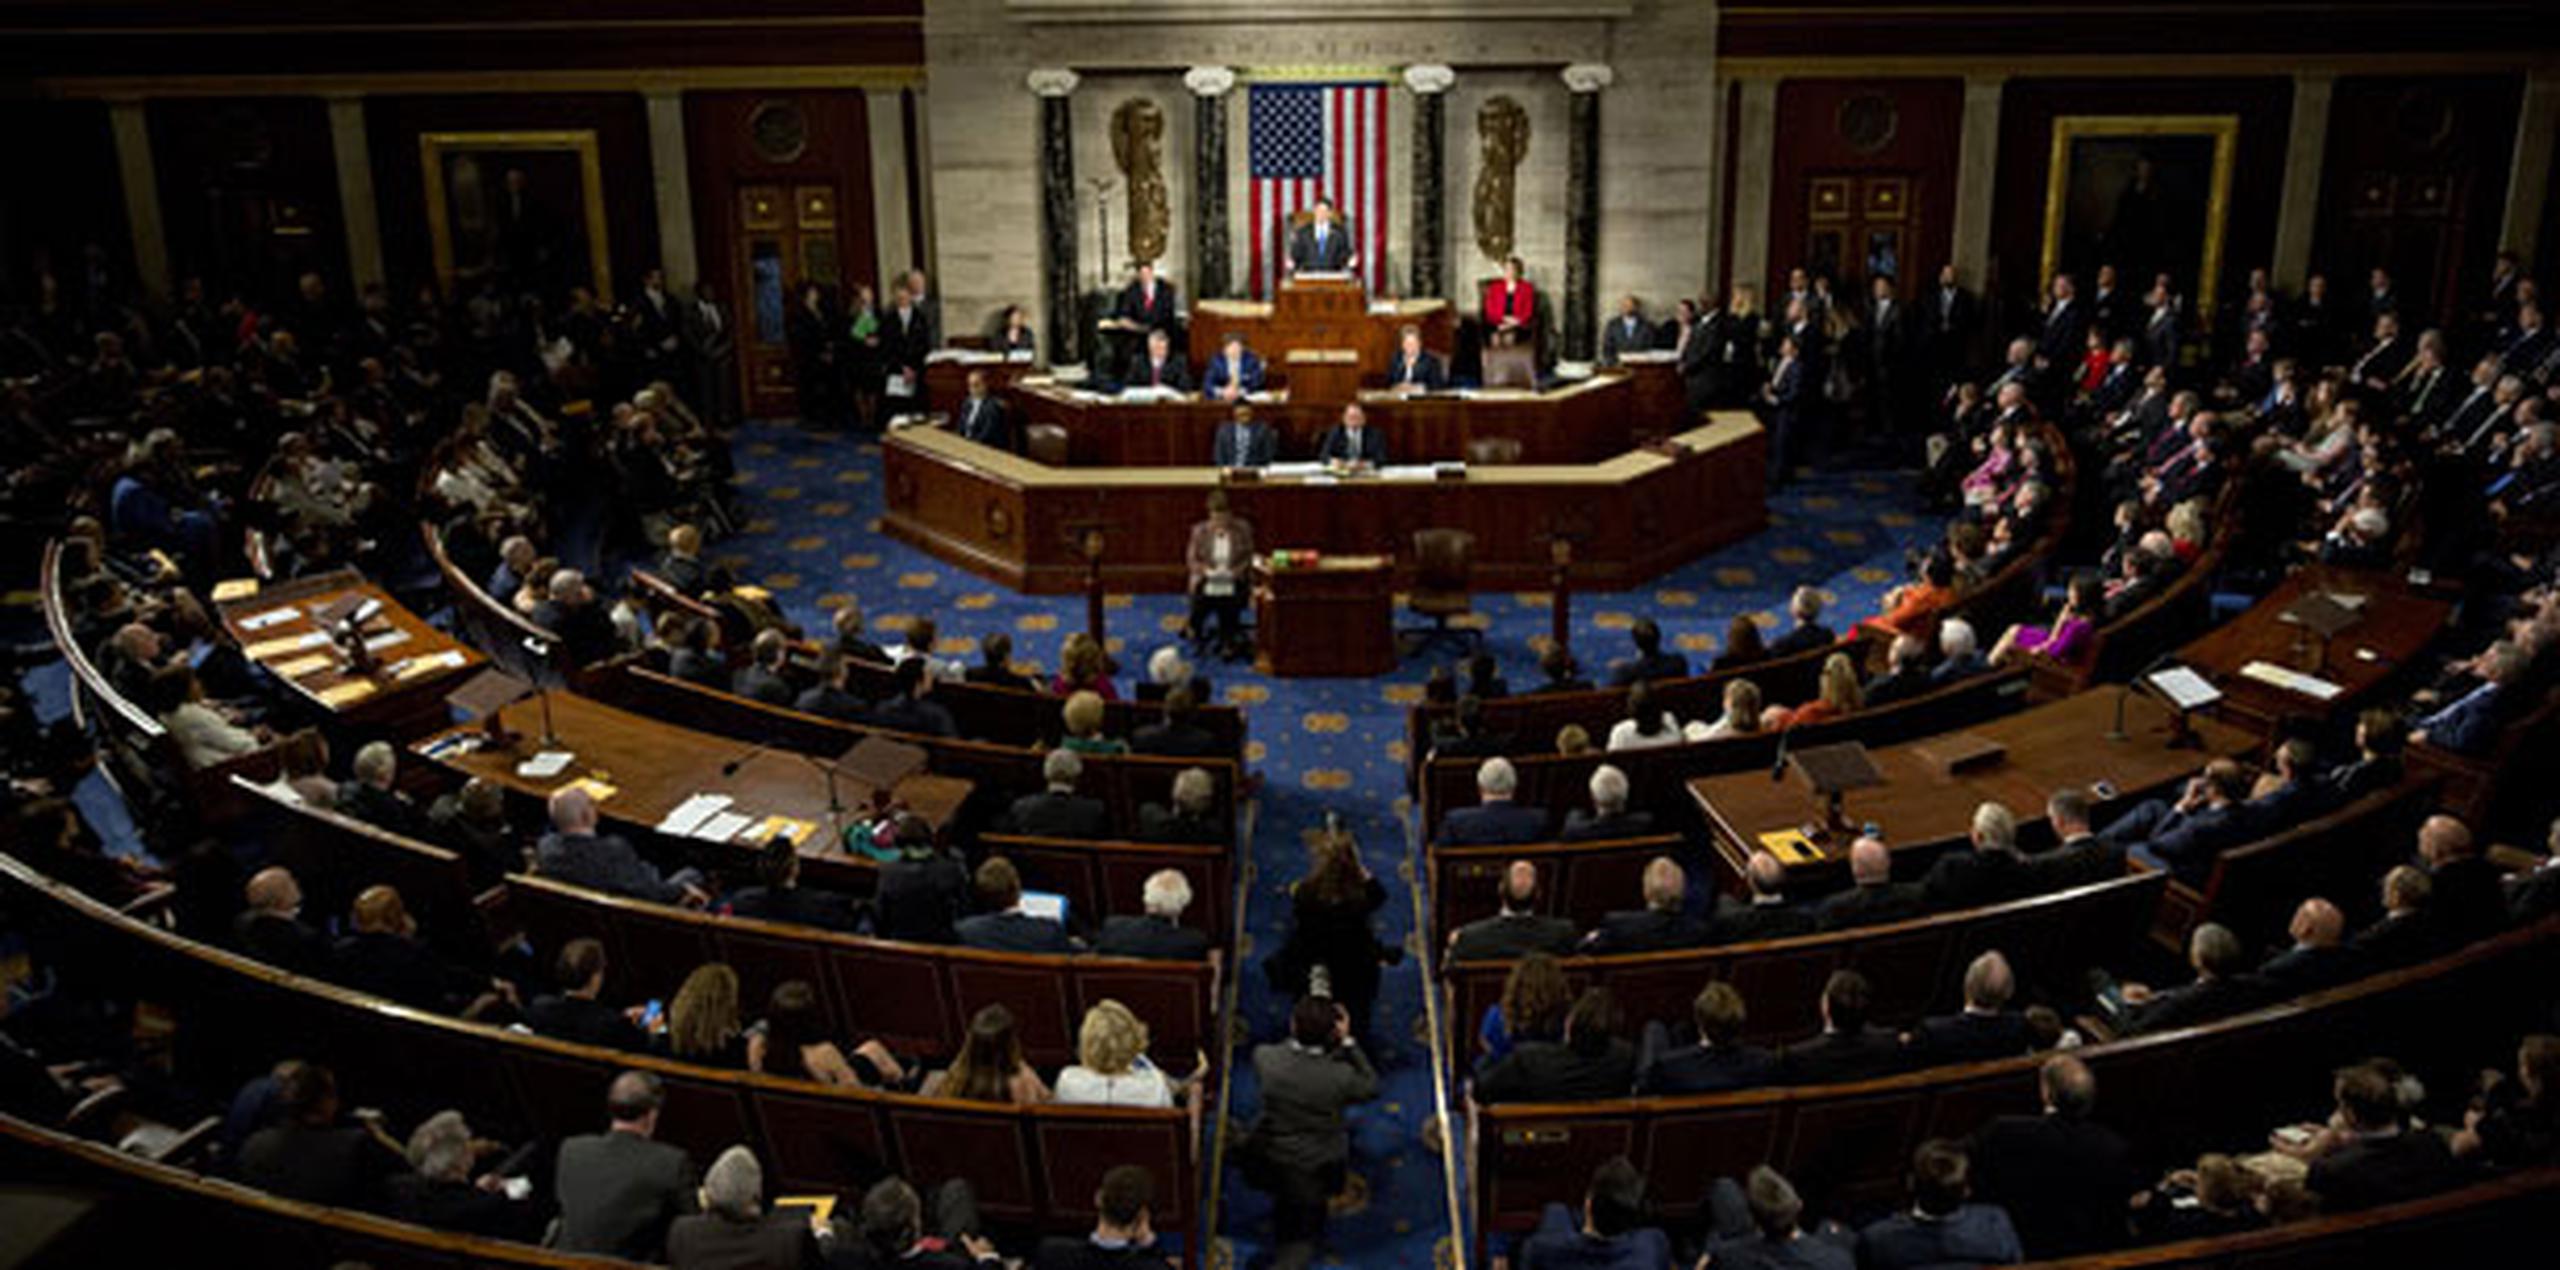 Los dirigentes republicanos de la Cámara de Representantes introdujeron en la noche del lunes algunas enmiendas a la propuesta de ley sanitaria para tratar de convencer a sus congresistas díscolos. (Archivo)